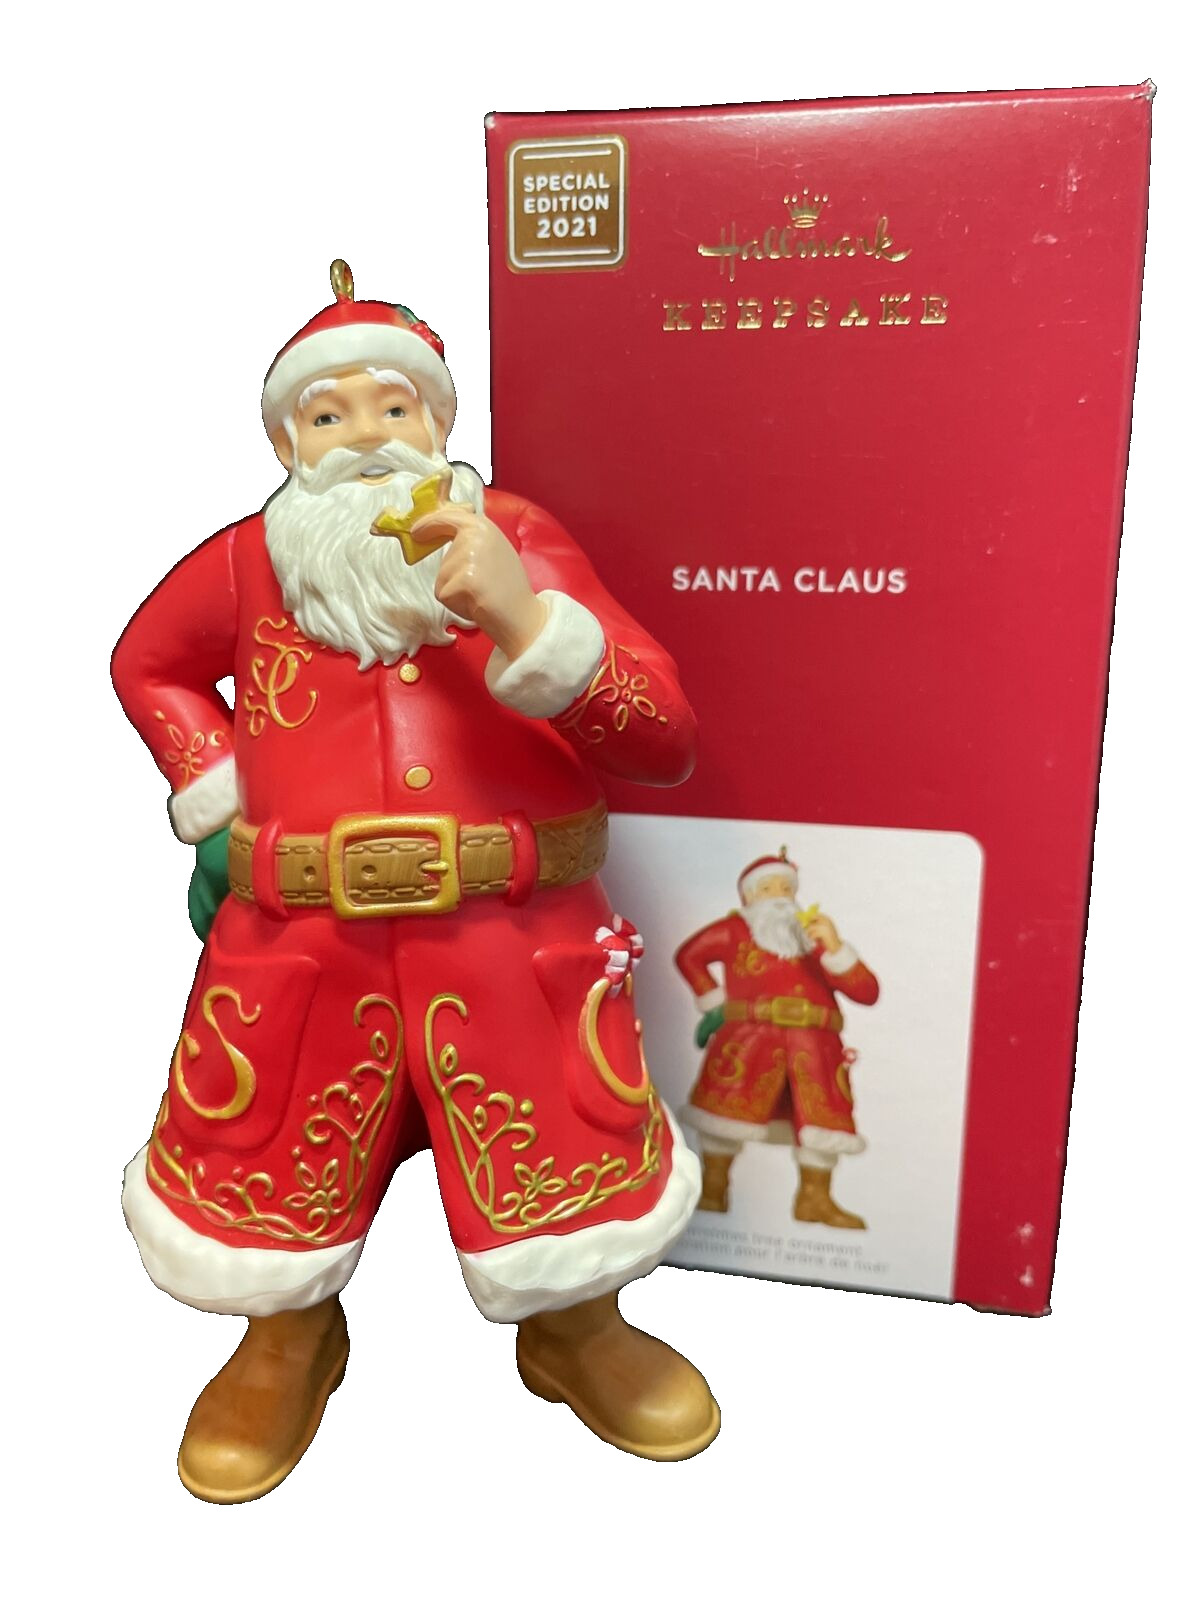 2021 Hallmark Ornament  Santa Claus Special Edition